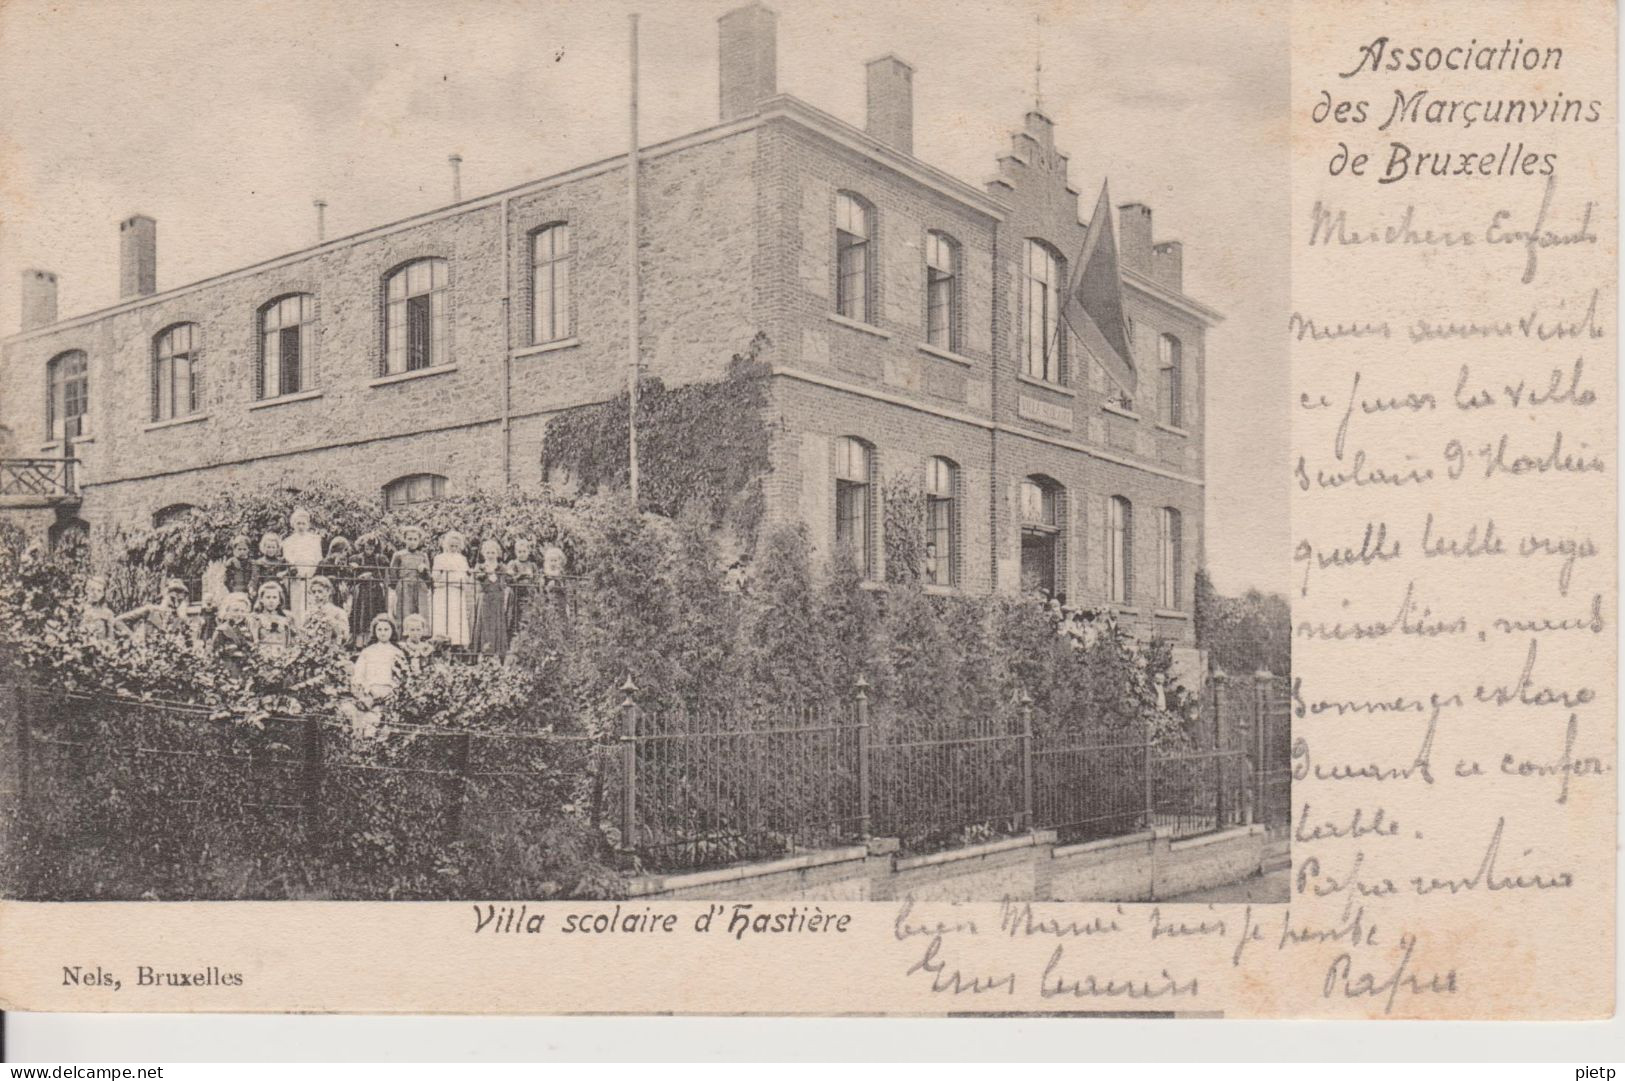 Villa scolaire d'Hastière - lot de 9  cpa de 1903